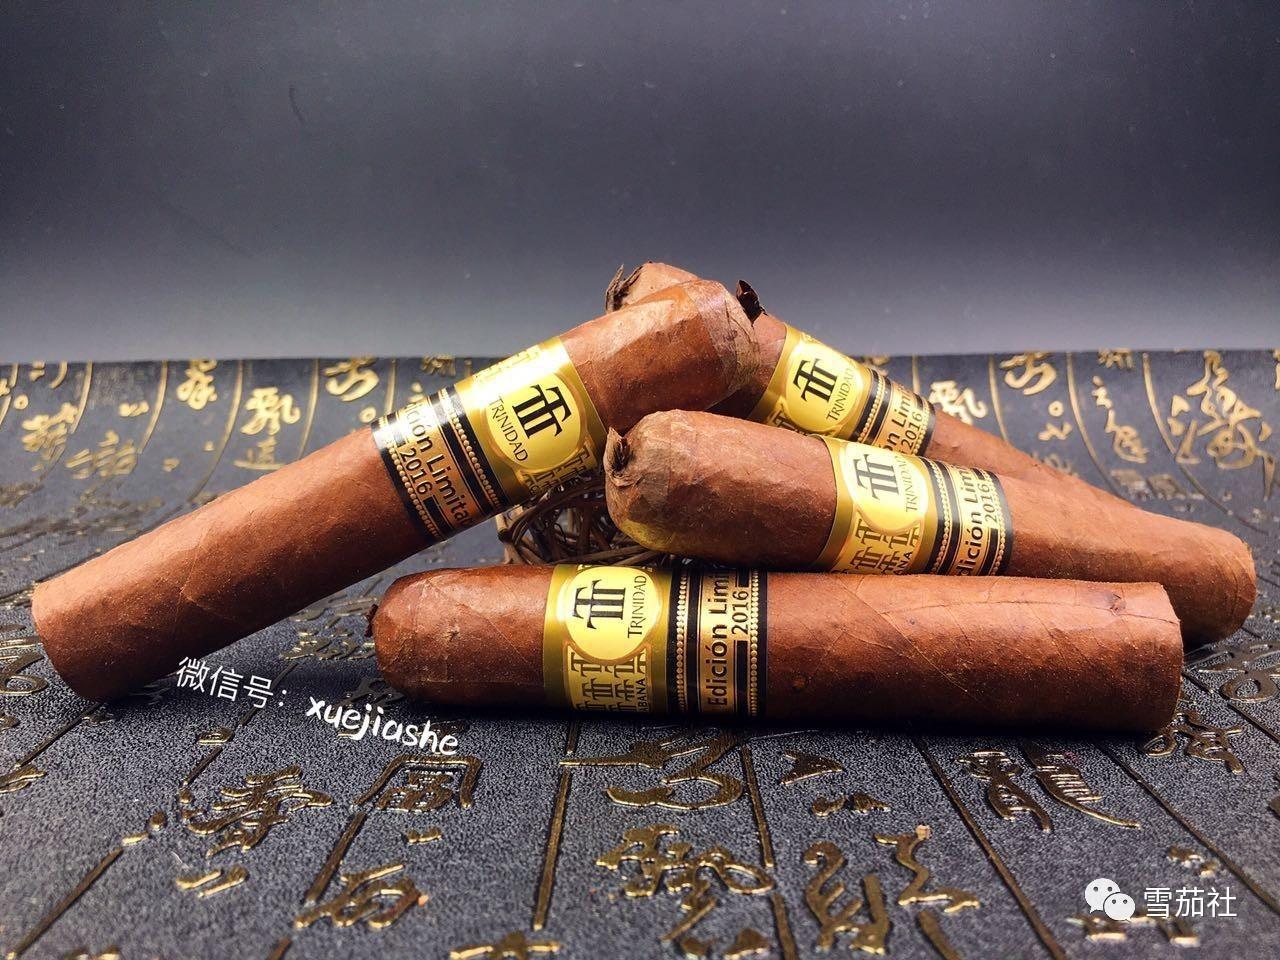 品味特立尼达2016限量版古巴雪茄